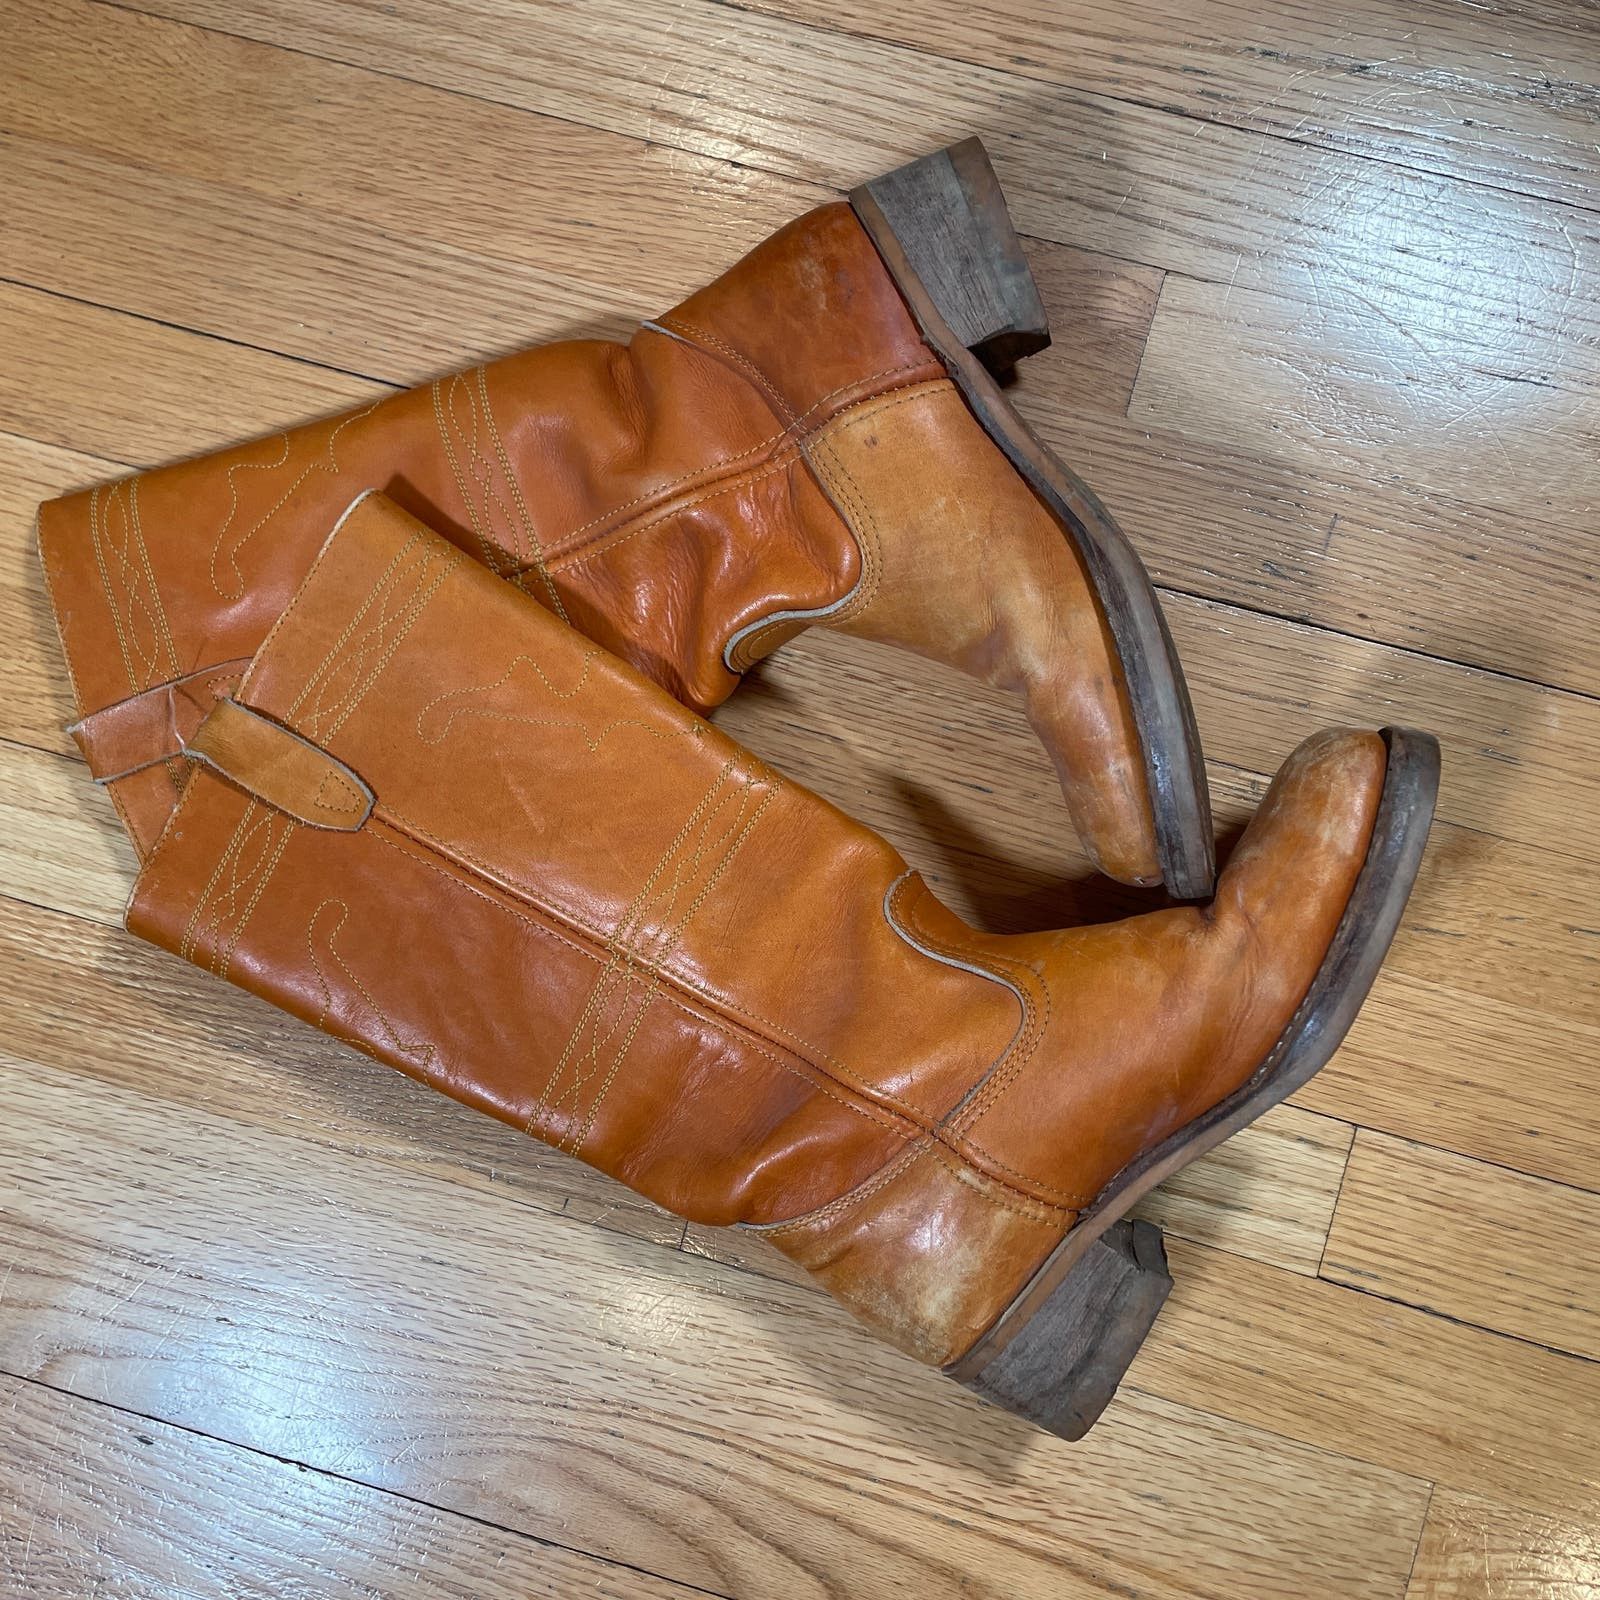 Vintage Vintage Leather Calf Boots 8 Mens Size US 8 / EU 41 - 3 Thumbnail